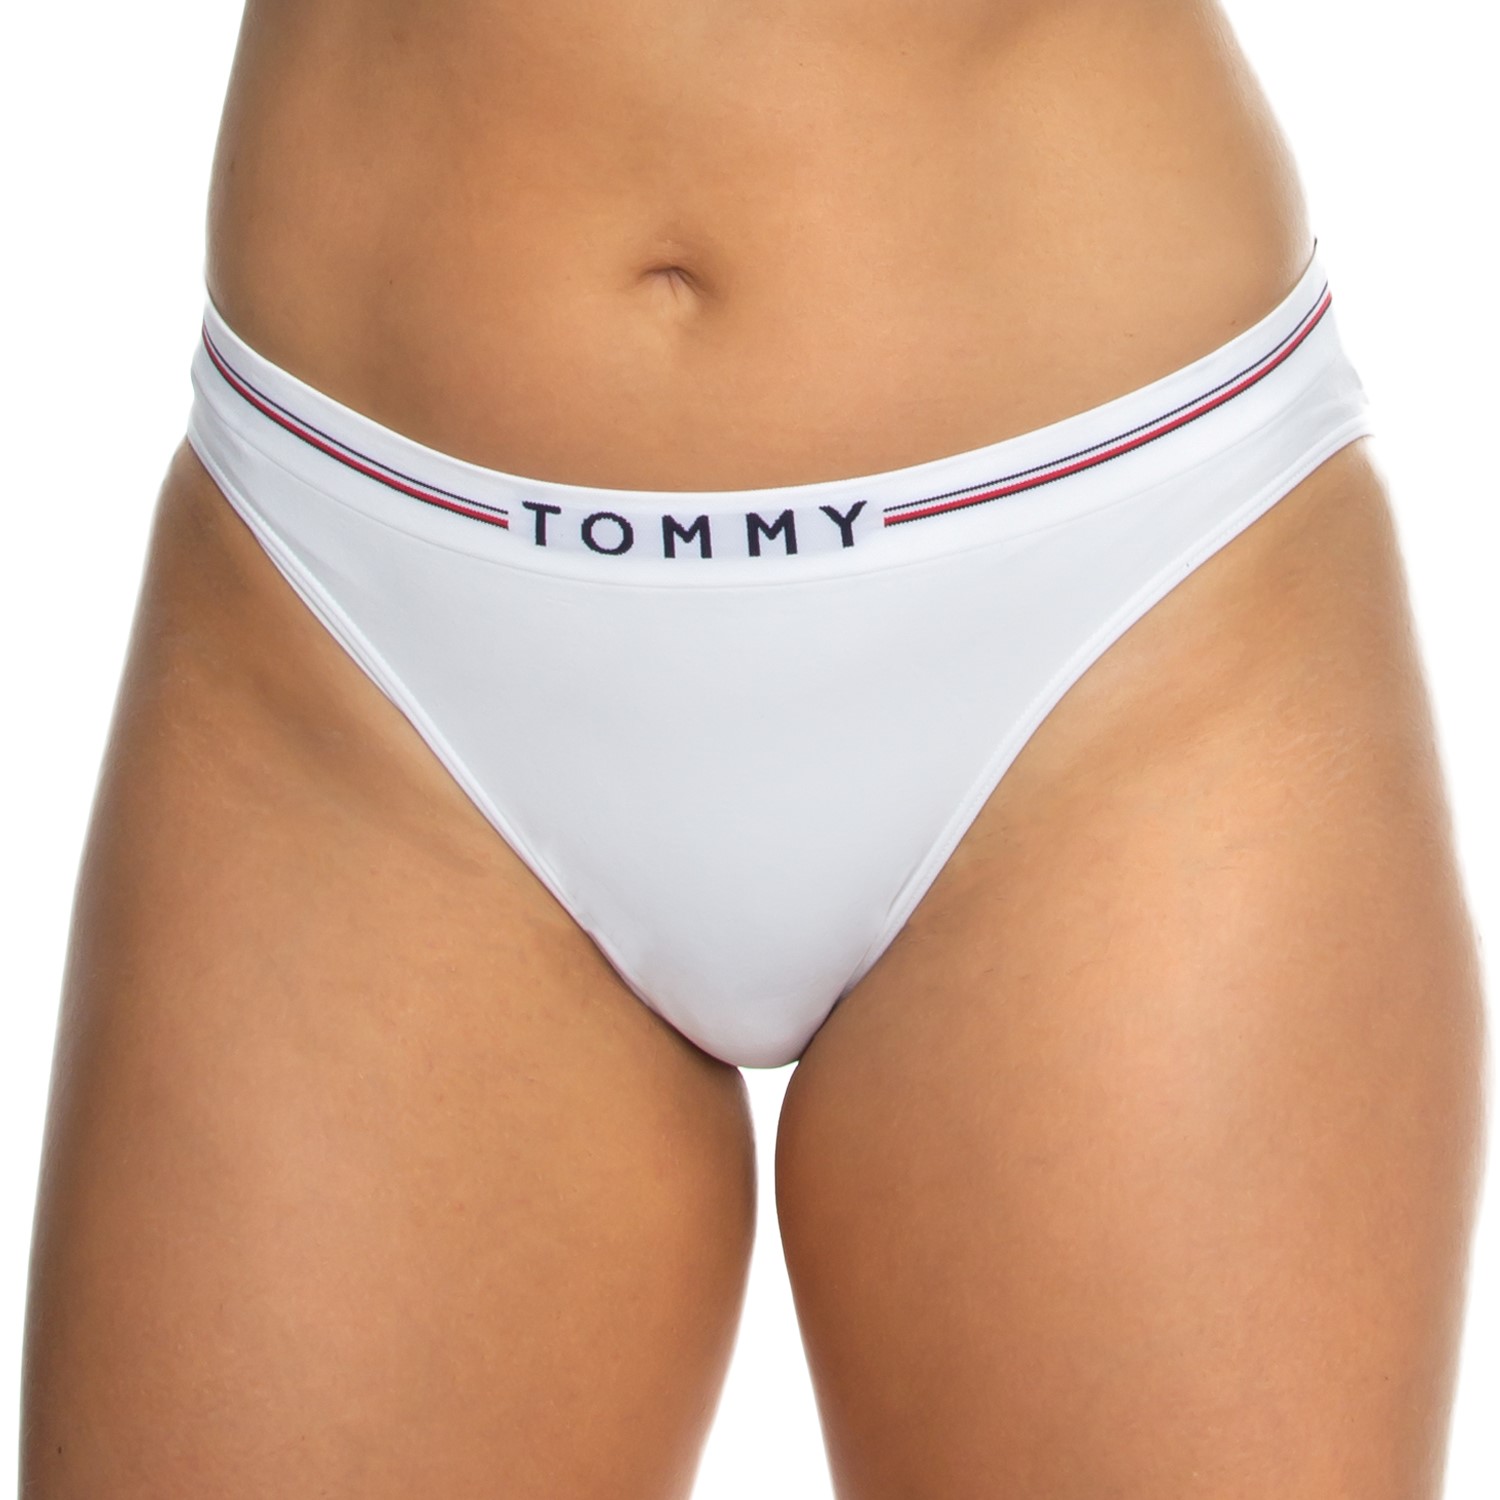 Tommy Hilfiger Tommy 85 High Waist Bikini Brief - Brief - Damen Unterhosen  - Unterwäsche - Timarco.at